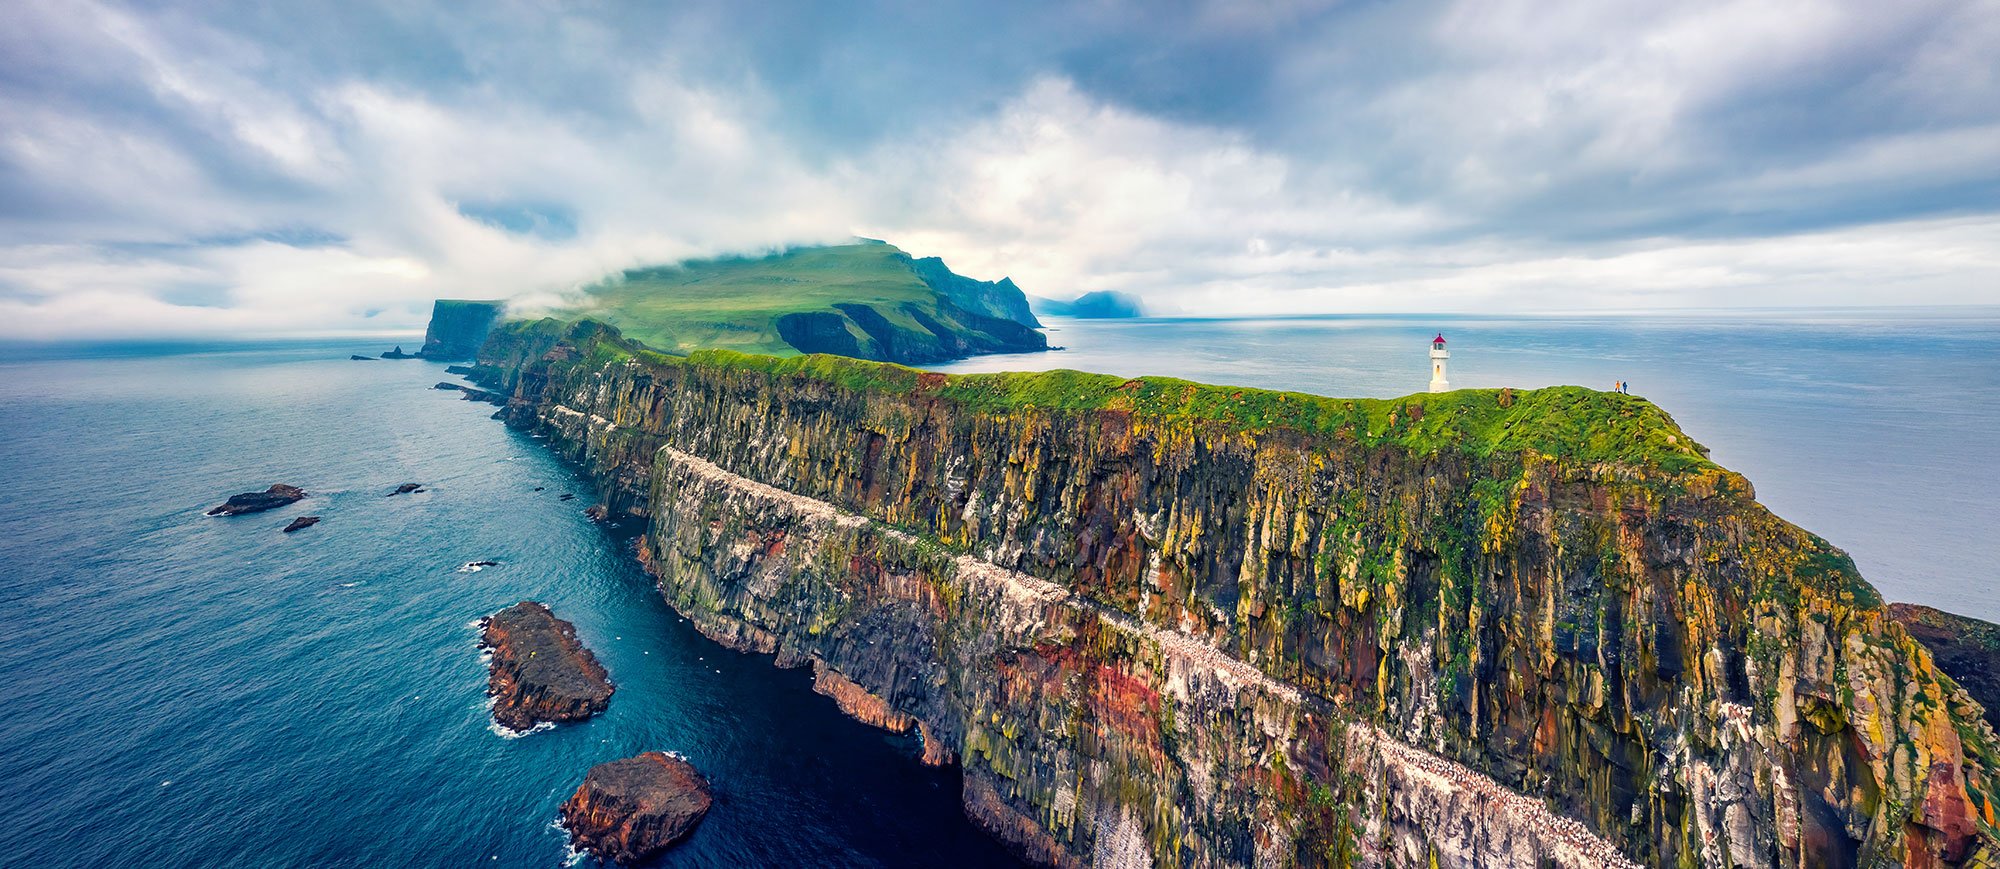 Landscape of Mykines on the Faroe Islands.